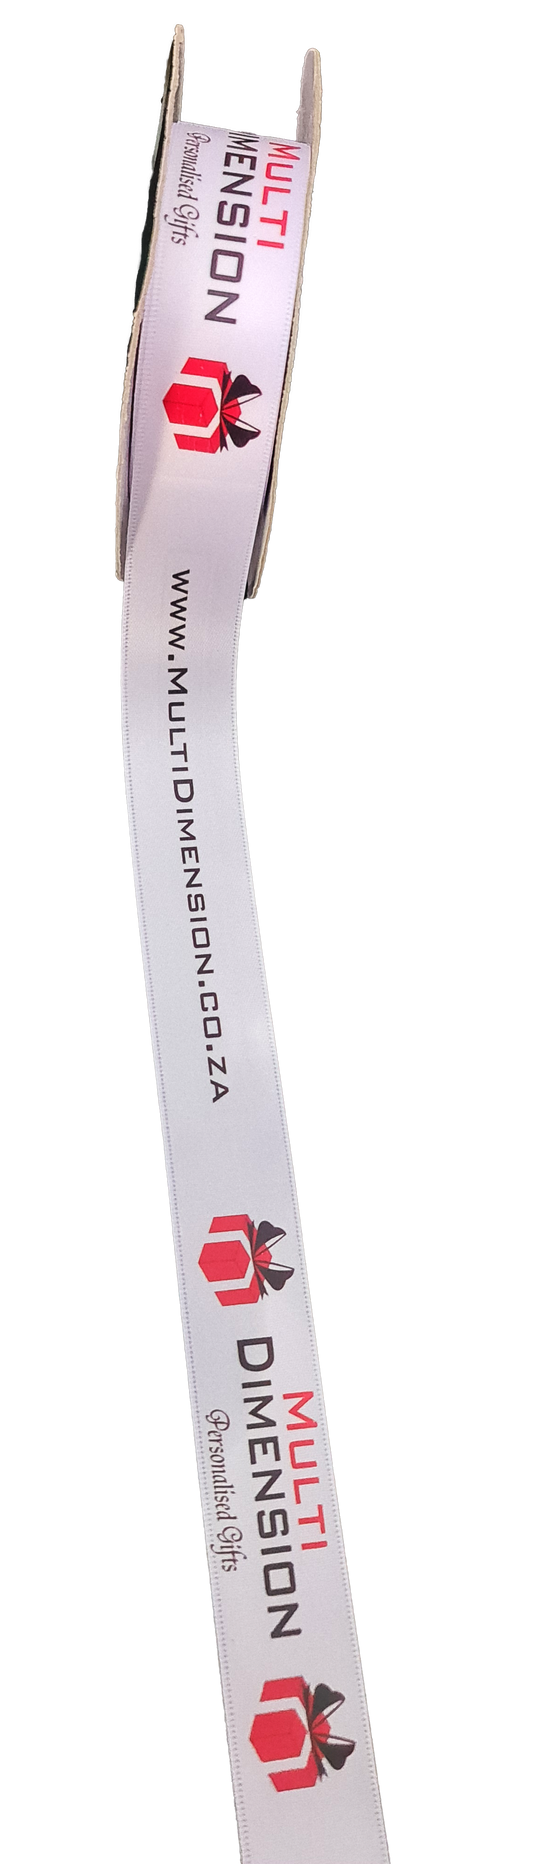 Branded ribbon